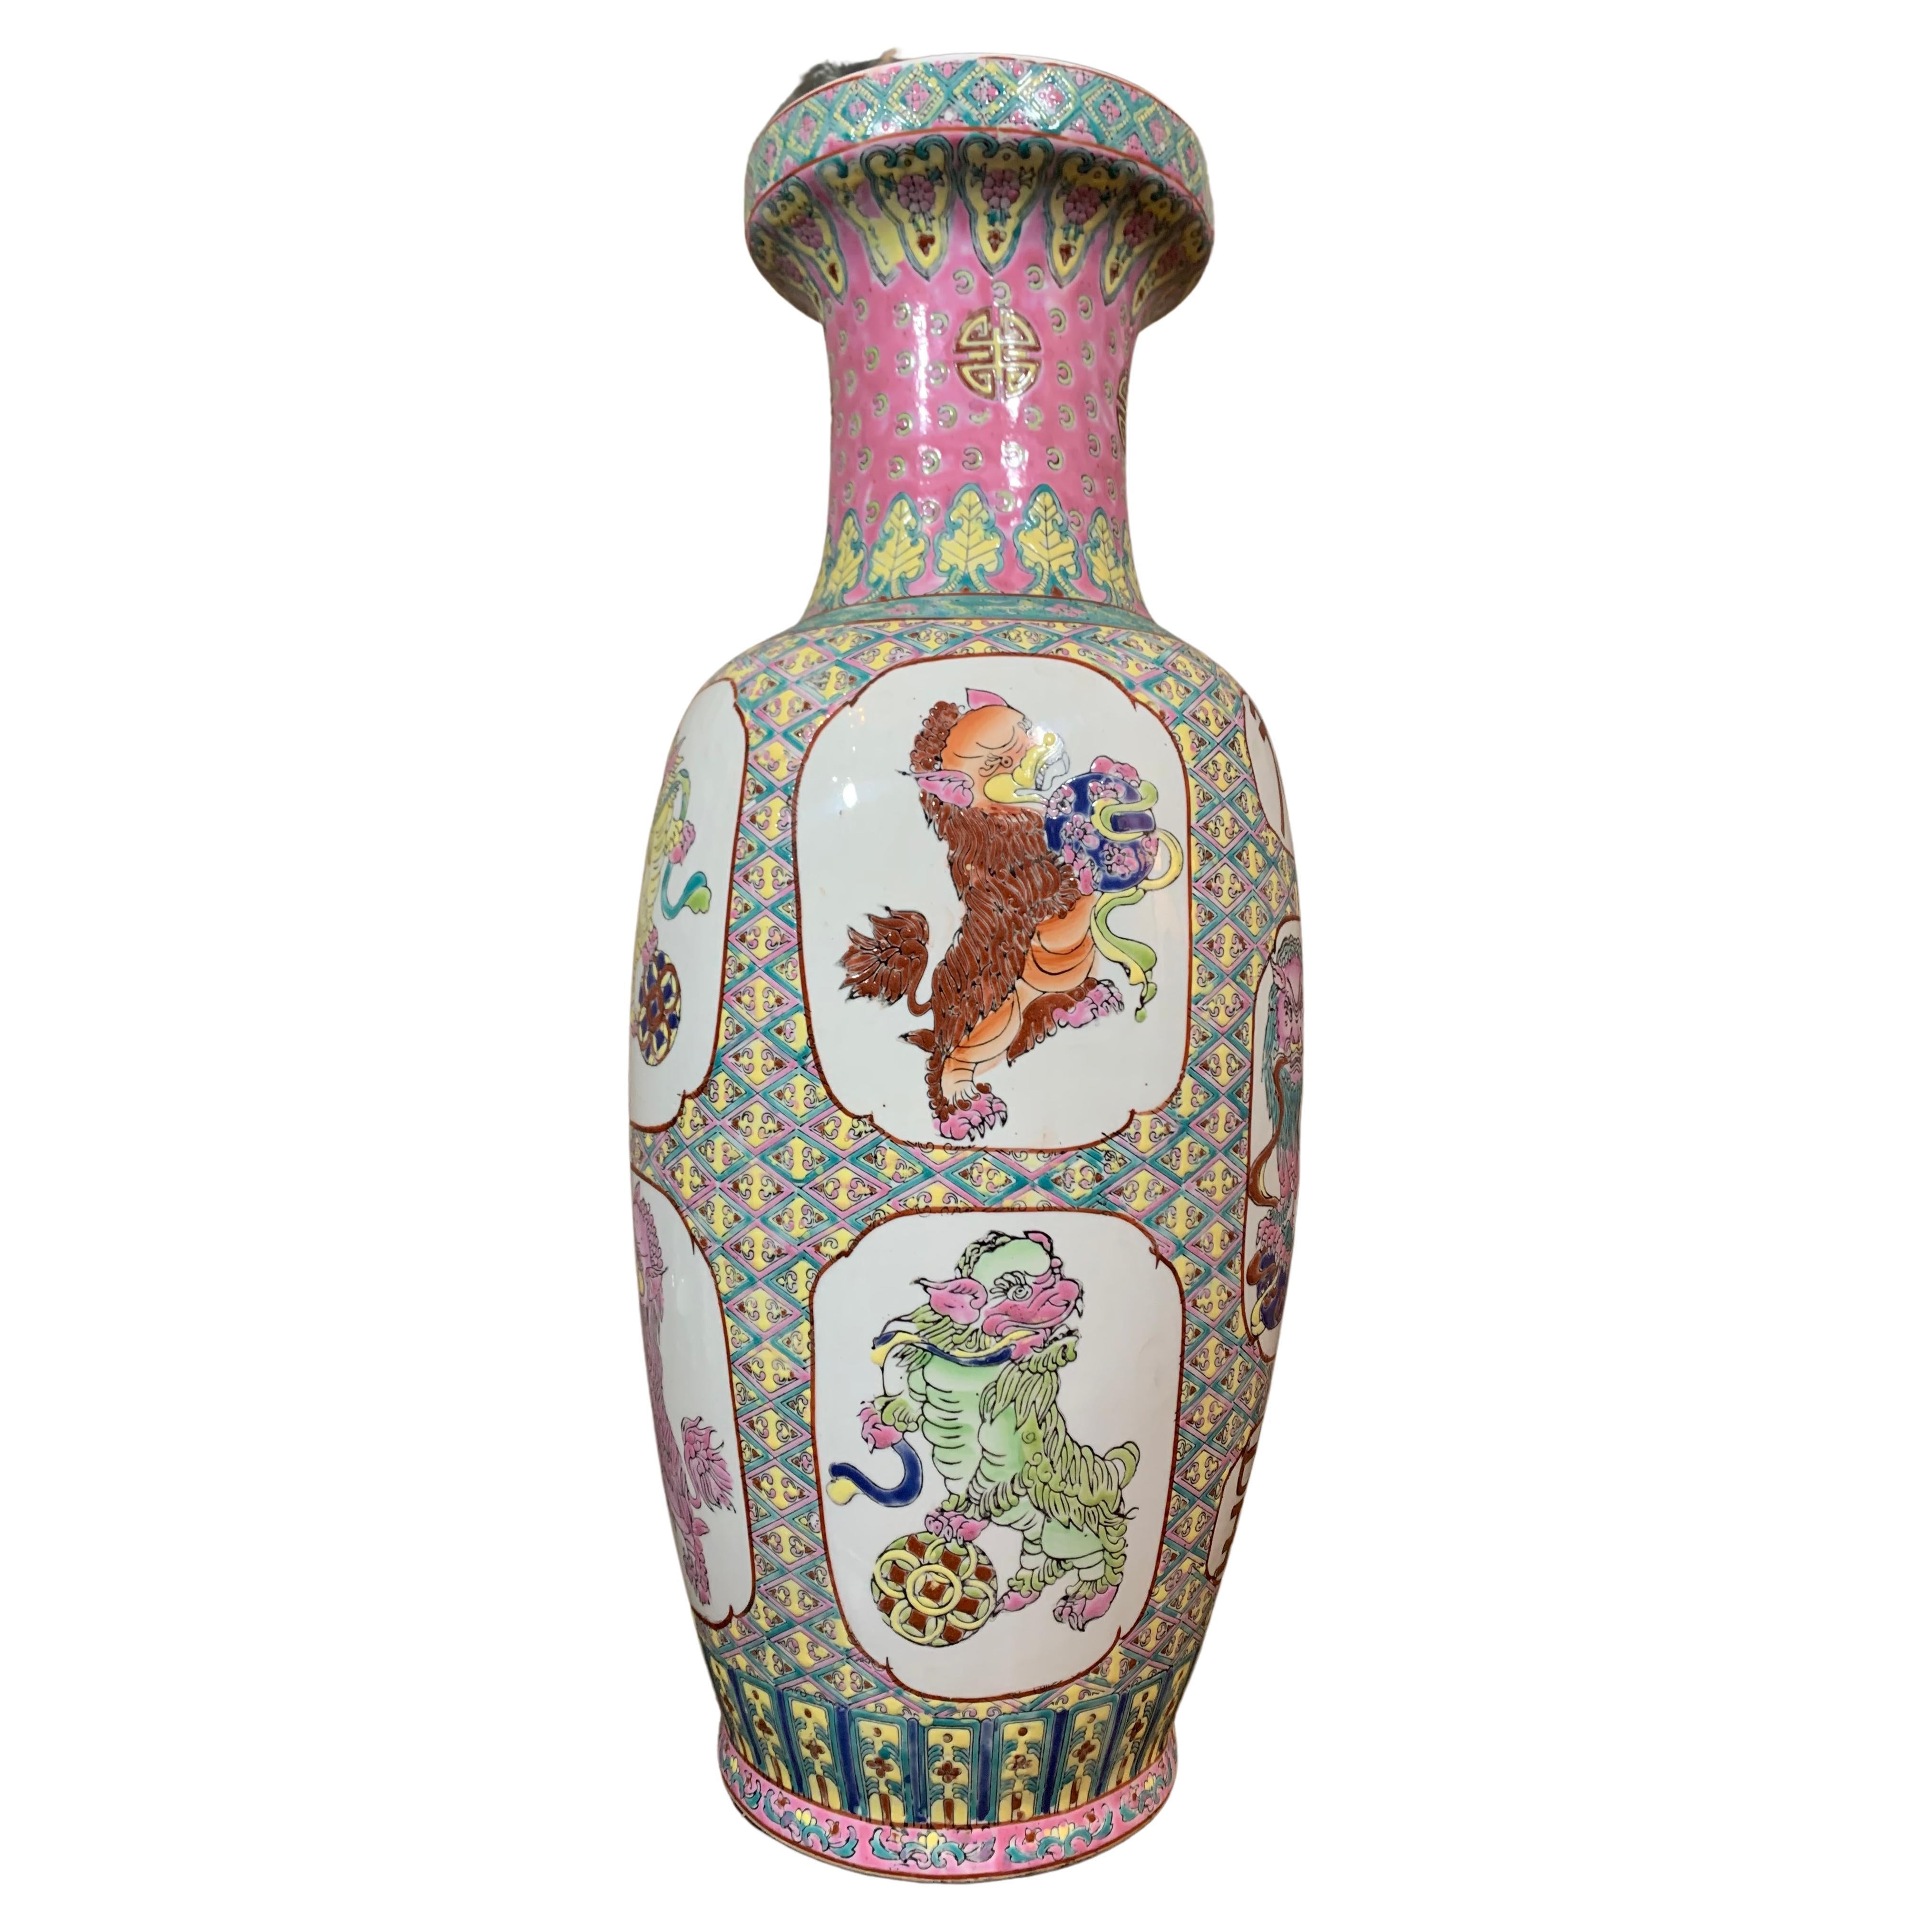 Diese große Vase besteht aus Kanton-Porzellan, das im frühen 20. Jahrhundert in China hergestellt wurde. Diese Vase hat auf beiden Seiten Doppelgriffe, die mit Tier- und Goldformen versehen sind. Es sind Harzdekorationen zu sehen, bei denen es sich